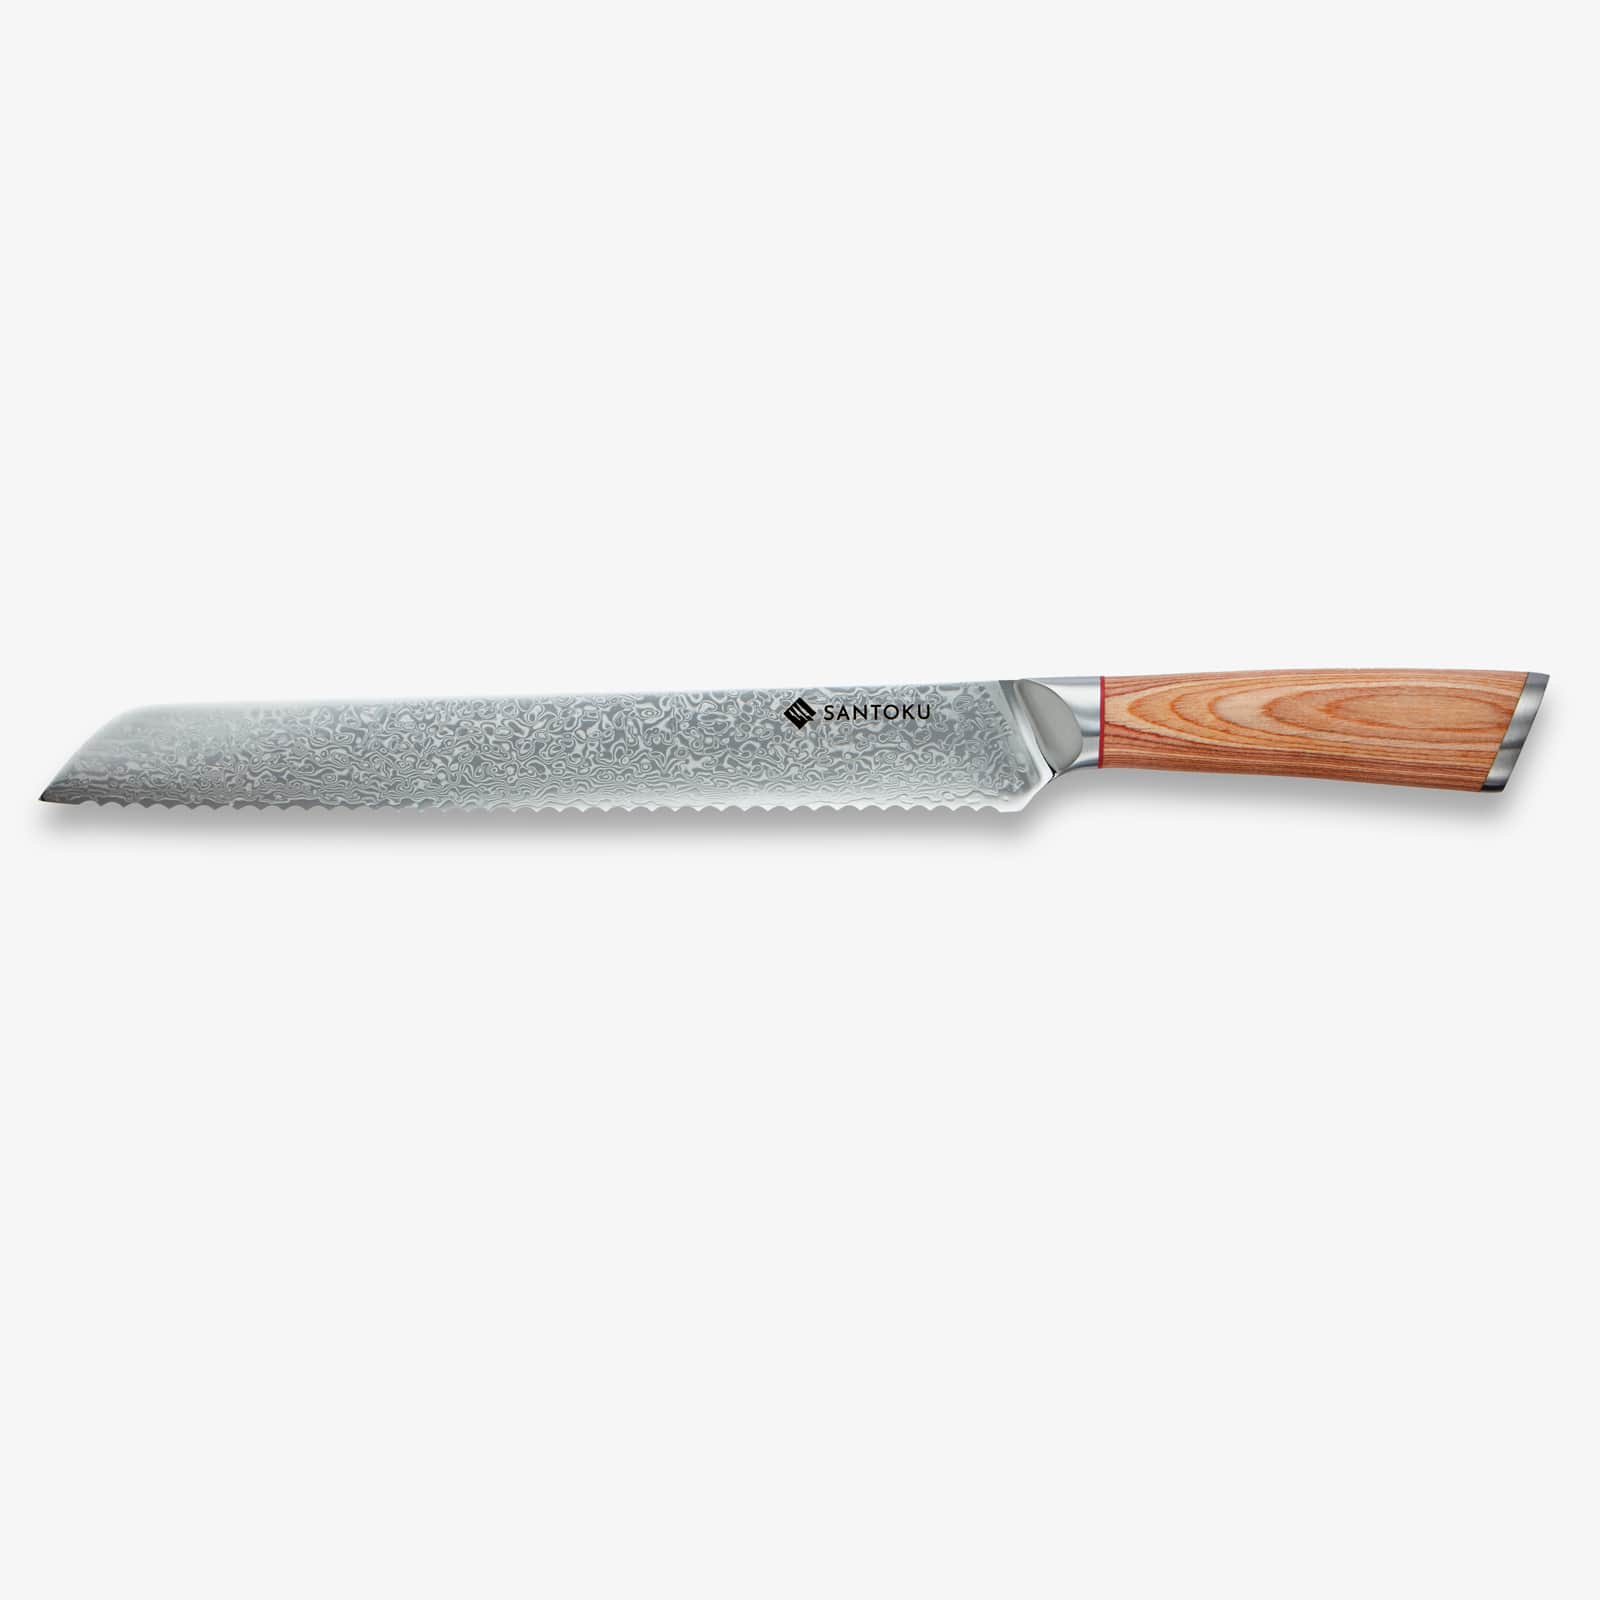 Haruta (はる た) 10 tommers brødkniv